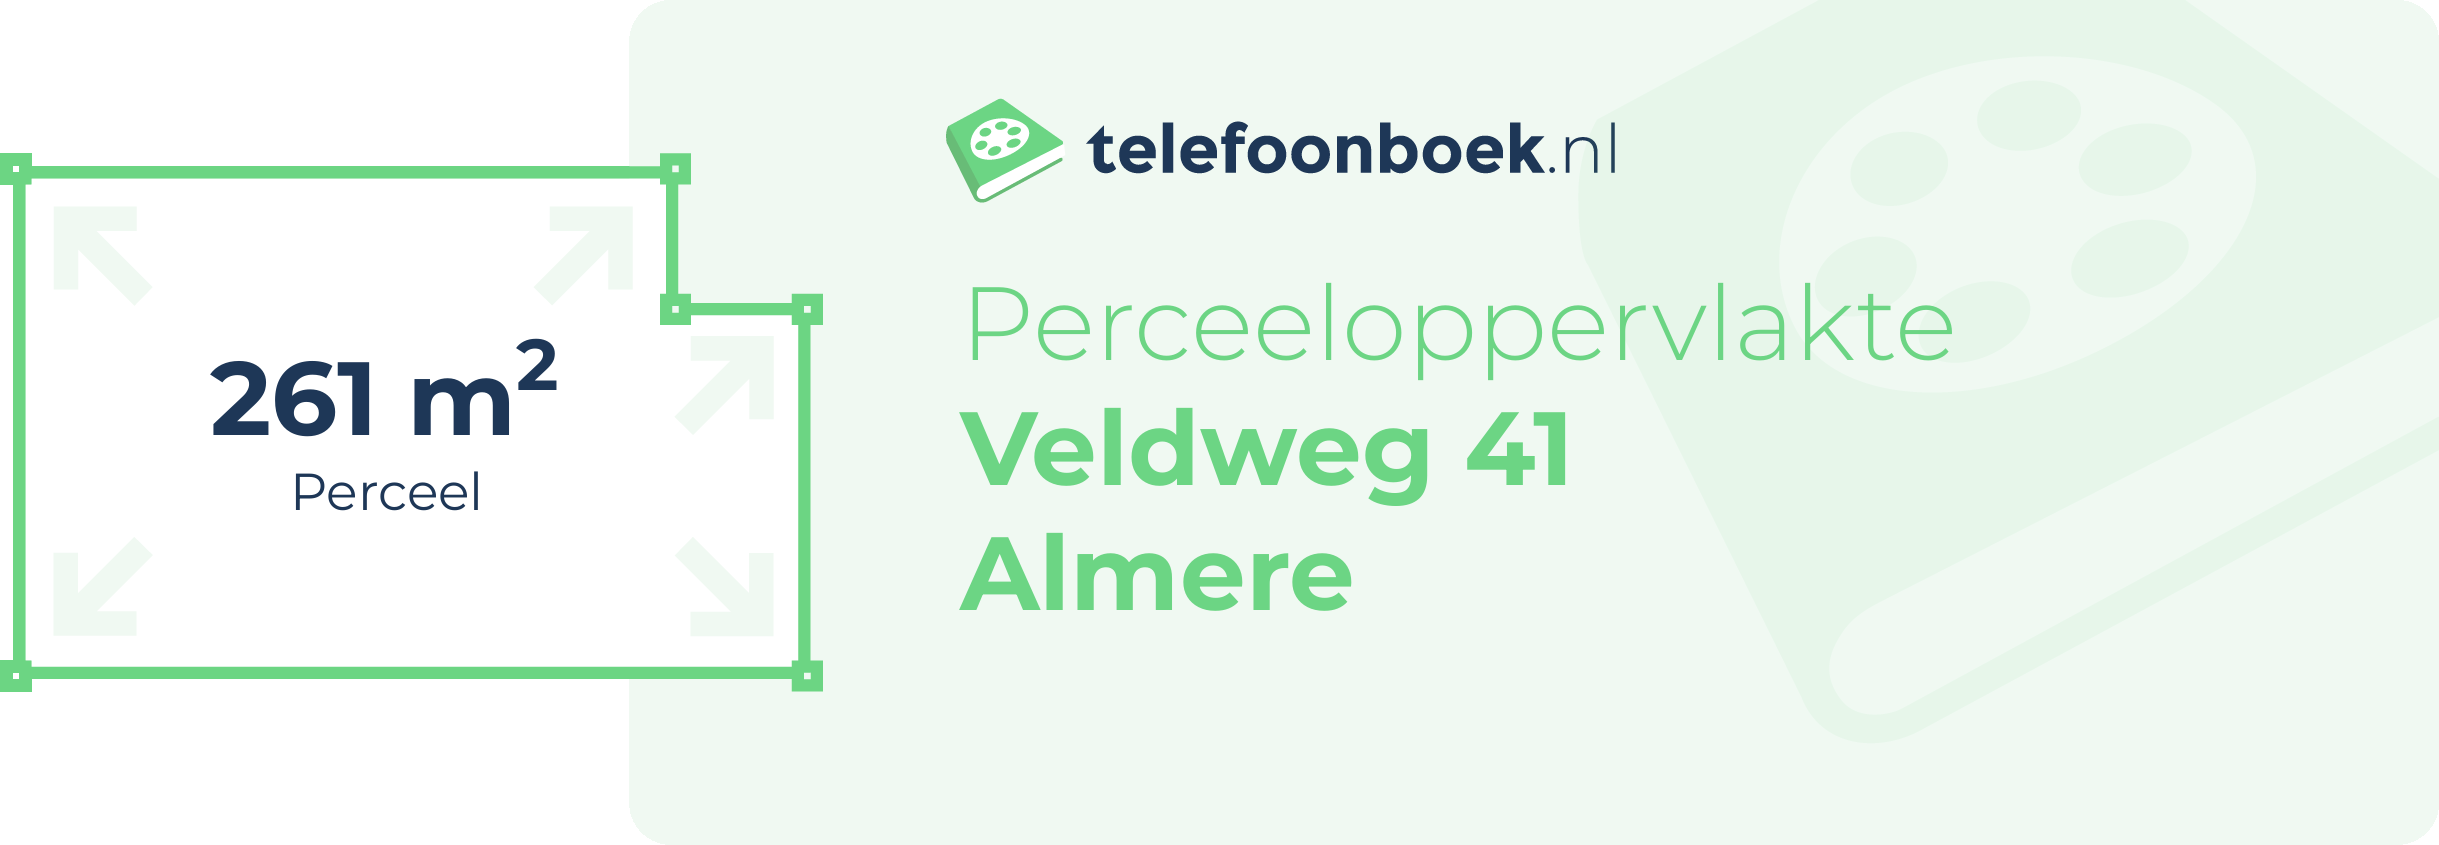 Perceeloppervlakte Veldweg 41 Almere